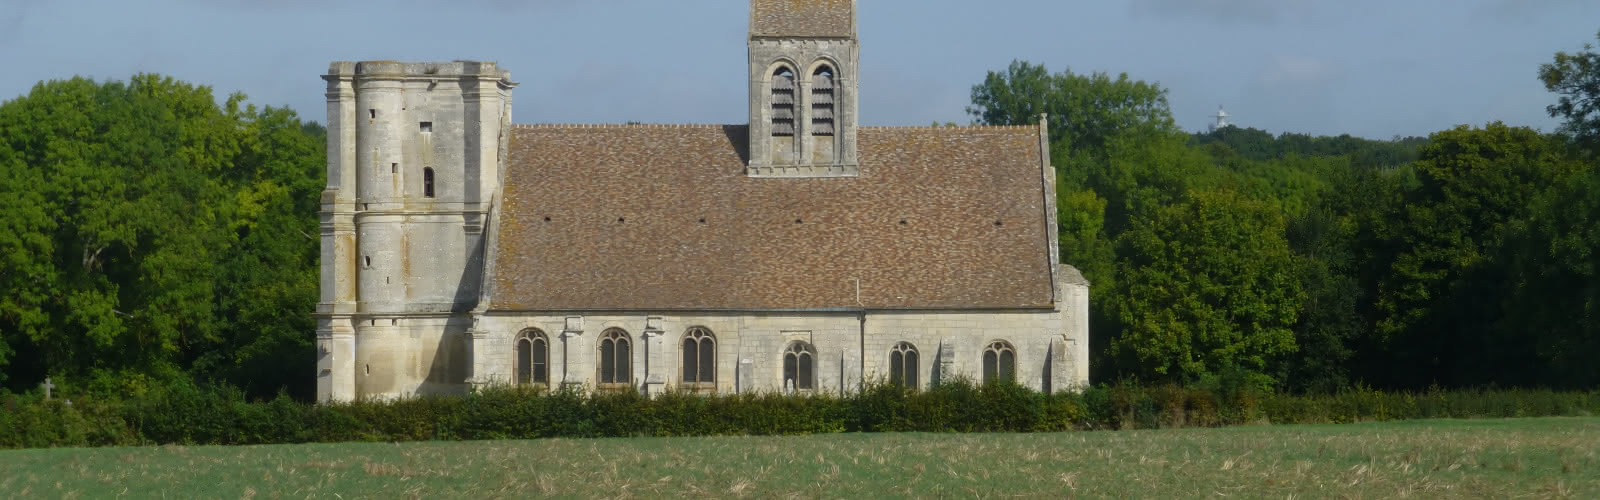 Eglise de Nucourt